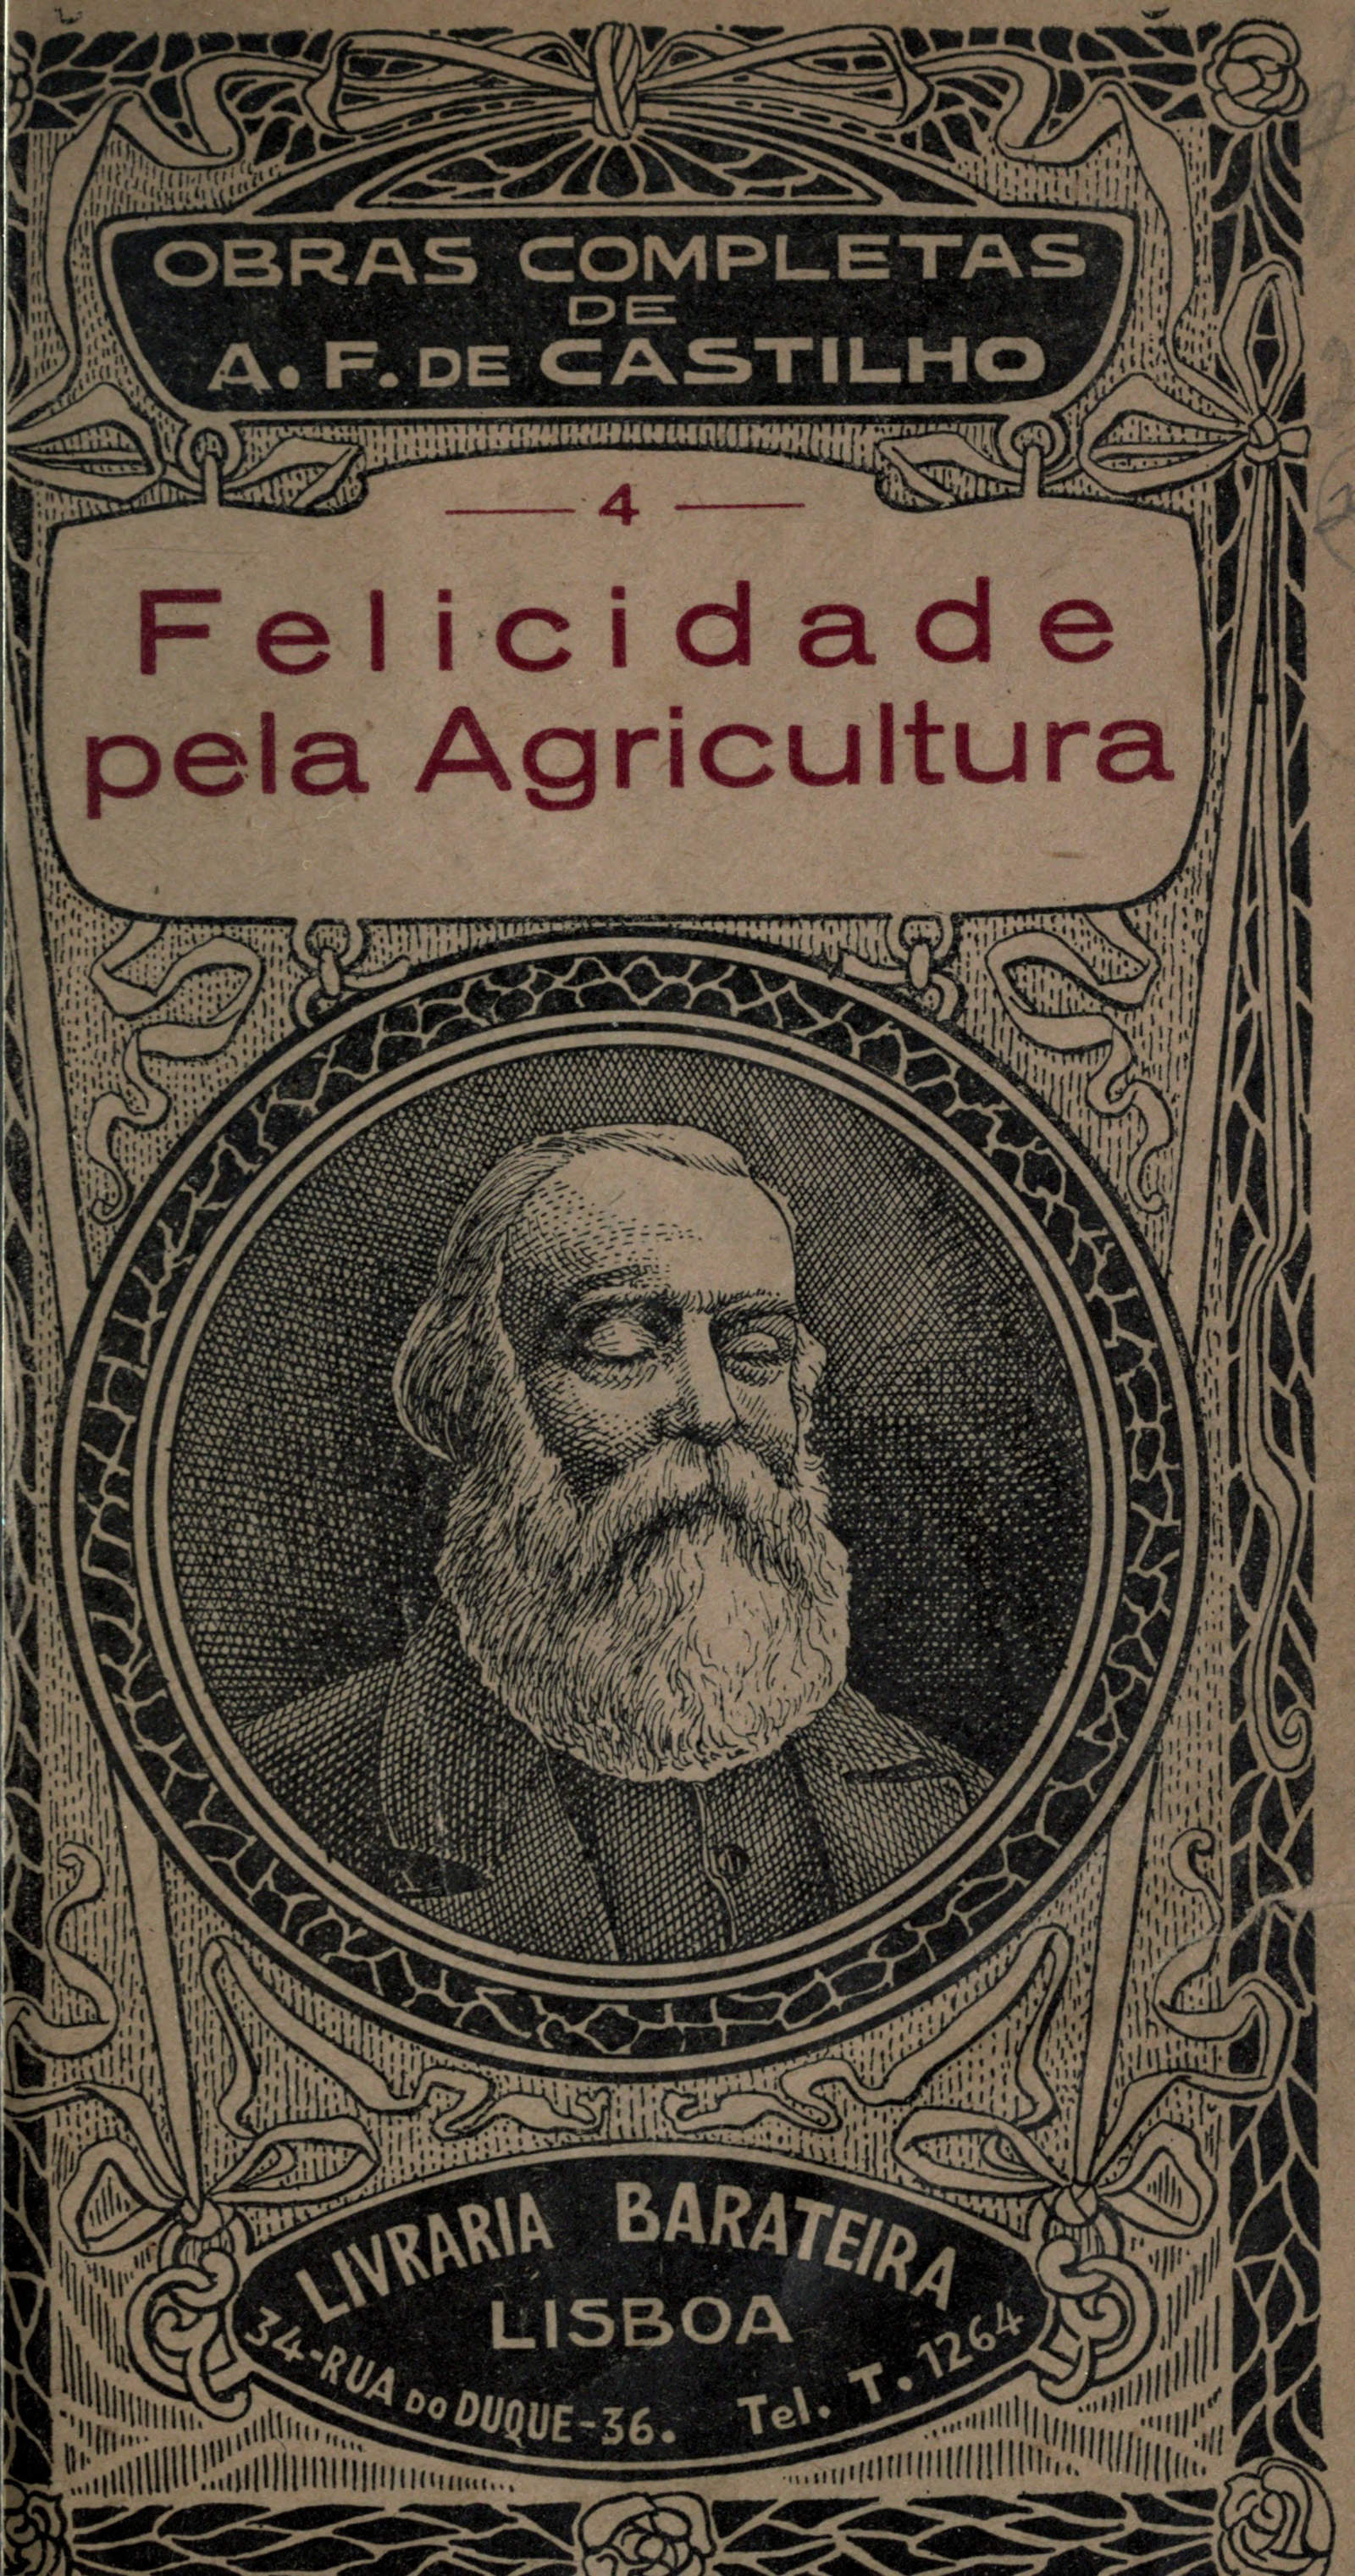 Felicidade pela Agricultura, by Antonio Feliciano de Castilho—A Project  Gutenberg eBook